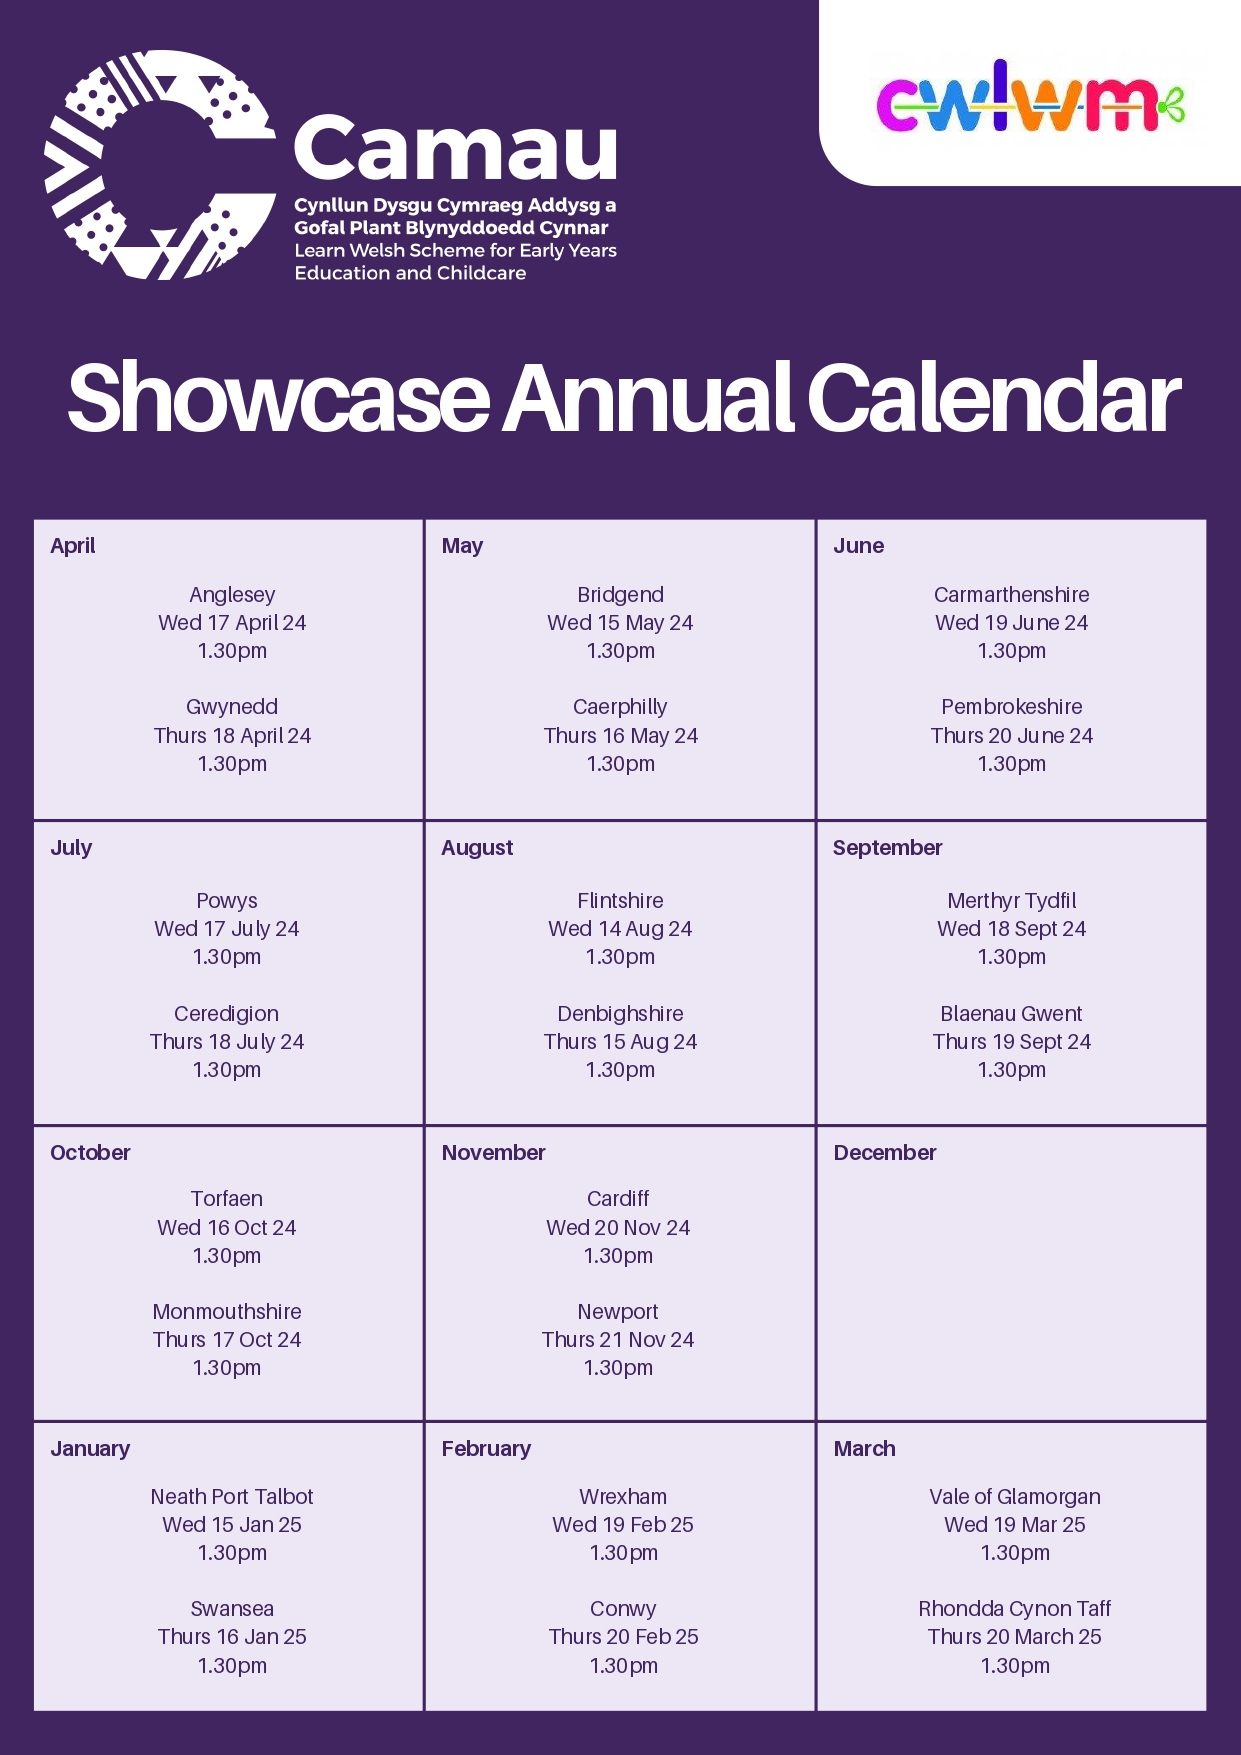 Showcase Annual Calendar